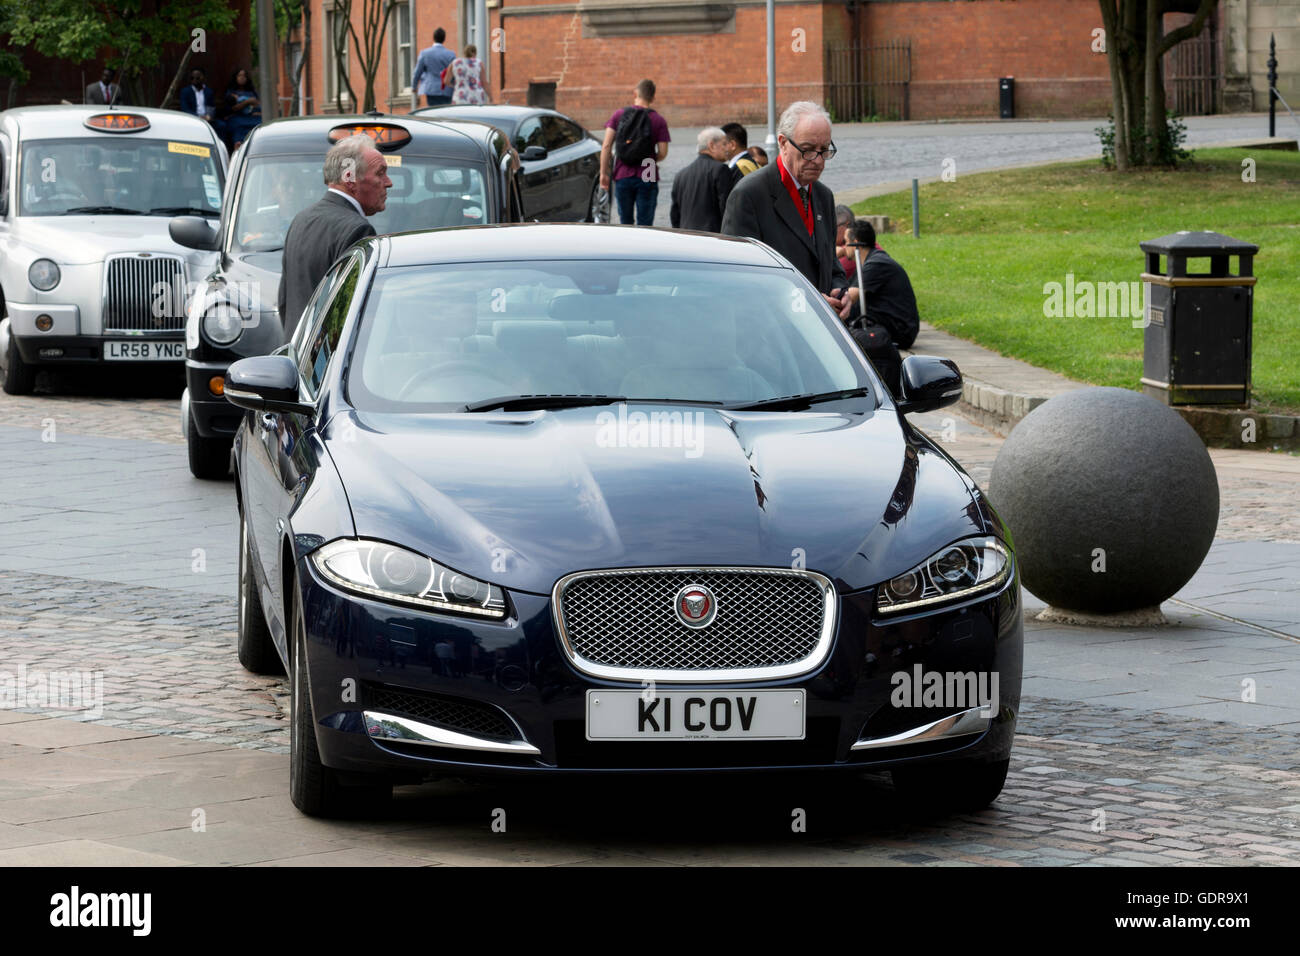 Jaguar XF 3.0 V6 diesel, Coventry City voiture officielle du Conseil de l'Université de Coventry le jour de graduation, UK Banque D'Images